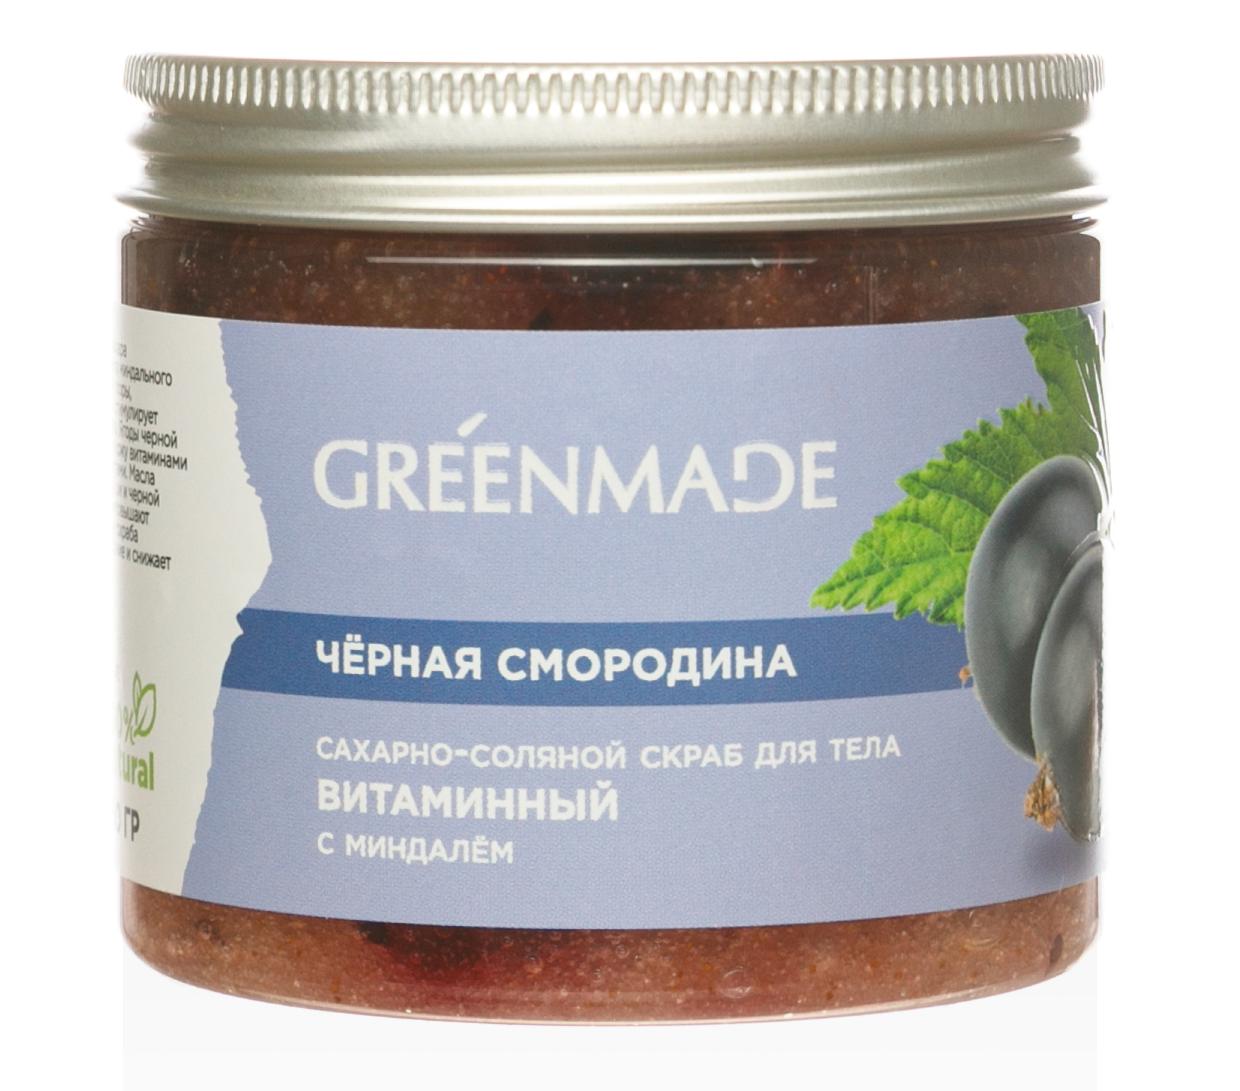 Скраб для тела сахарно-соляной Черная смородина Greenmade, 250 г купить в онлайн экомаркете